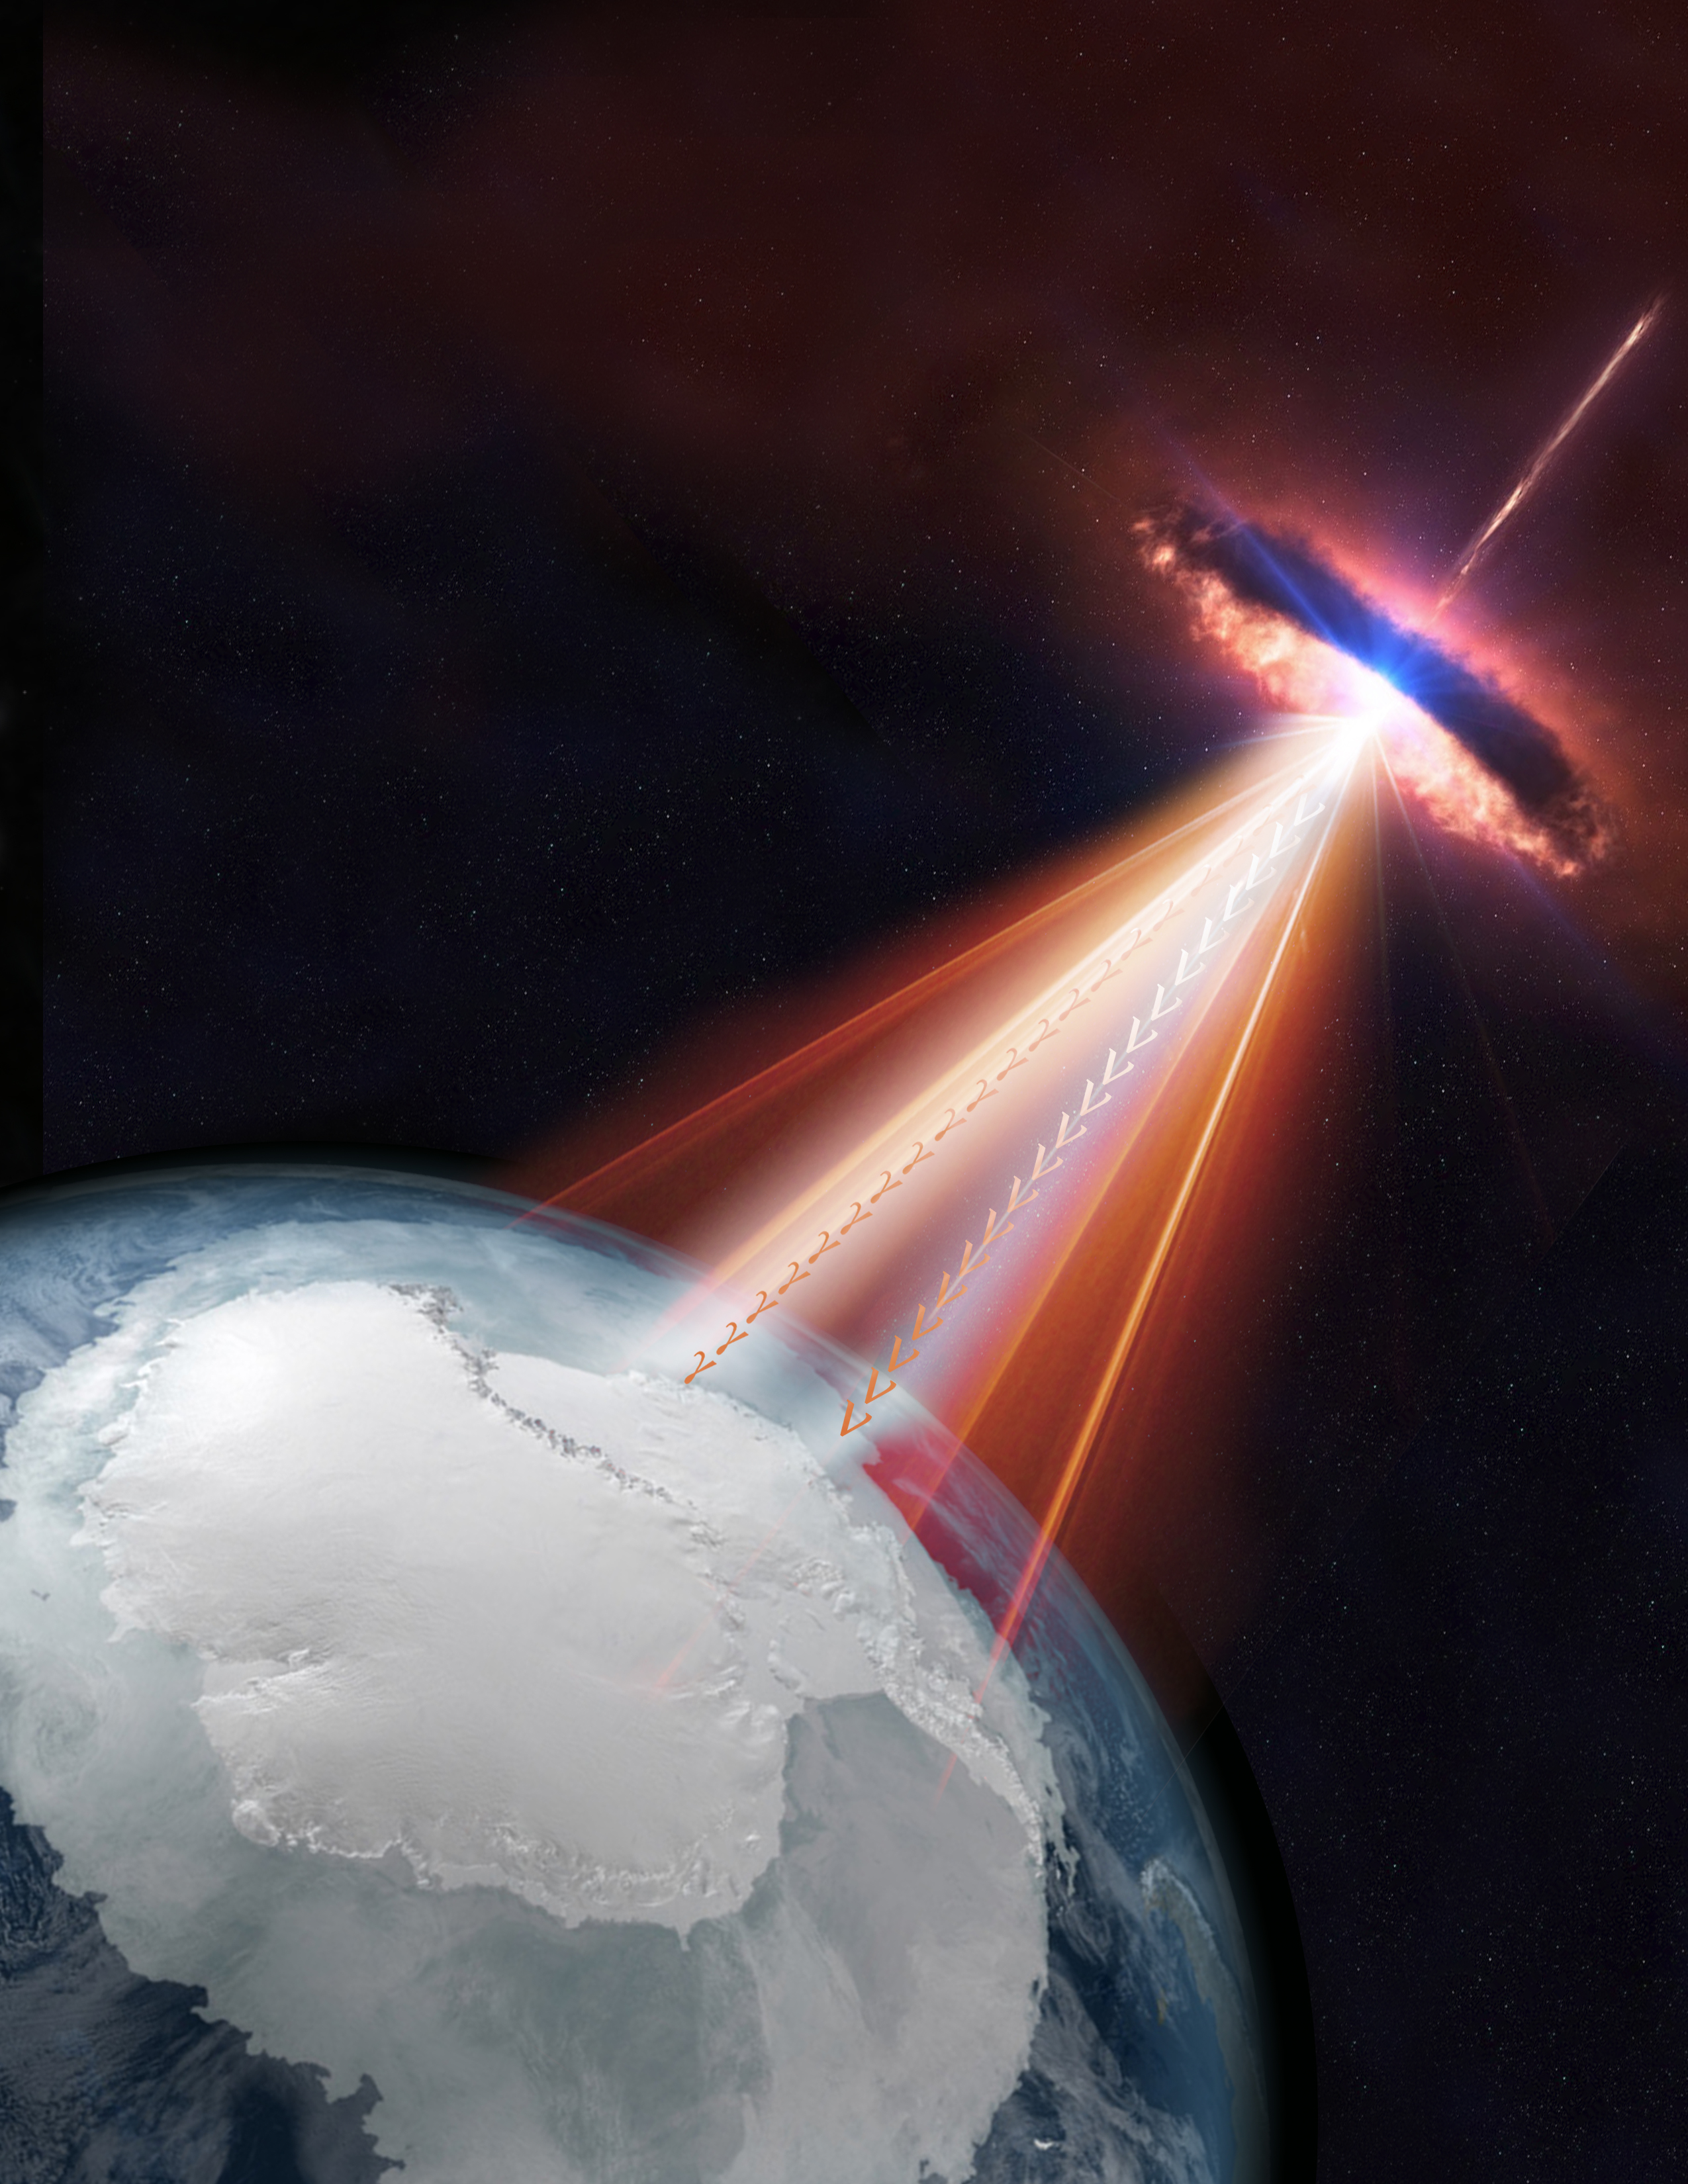 Blazar shoots neutrinos and gamma rays to Earth